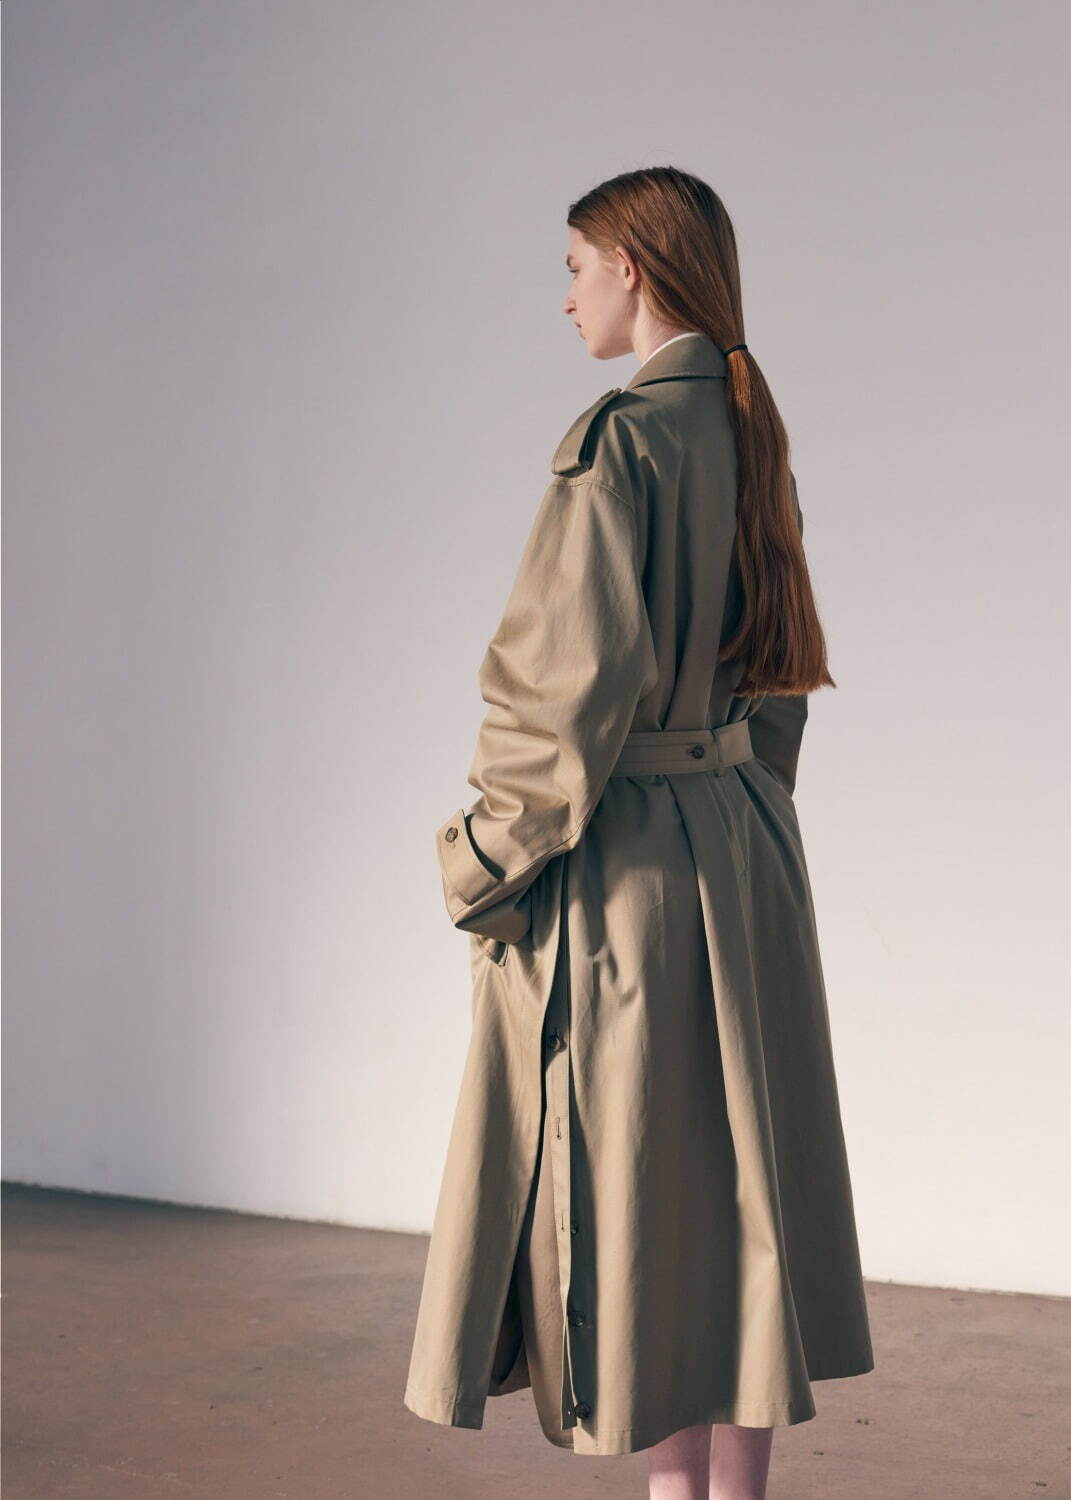 シュタイン 2021-22年秋冬コレクション、静けさに包まれた構築的な服